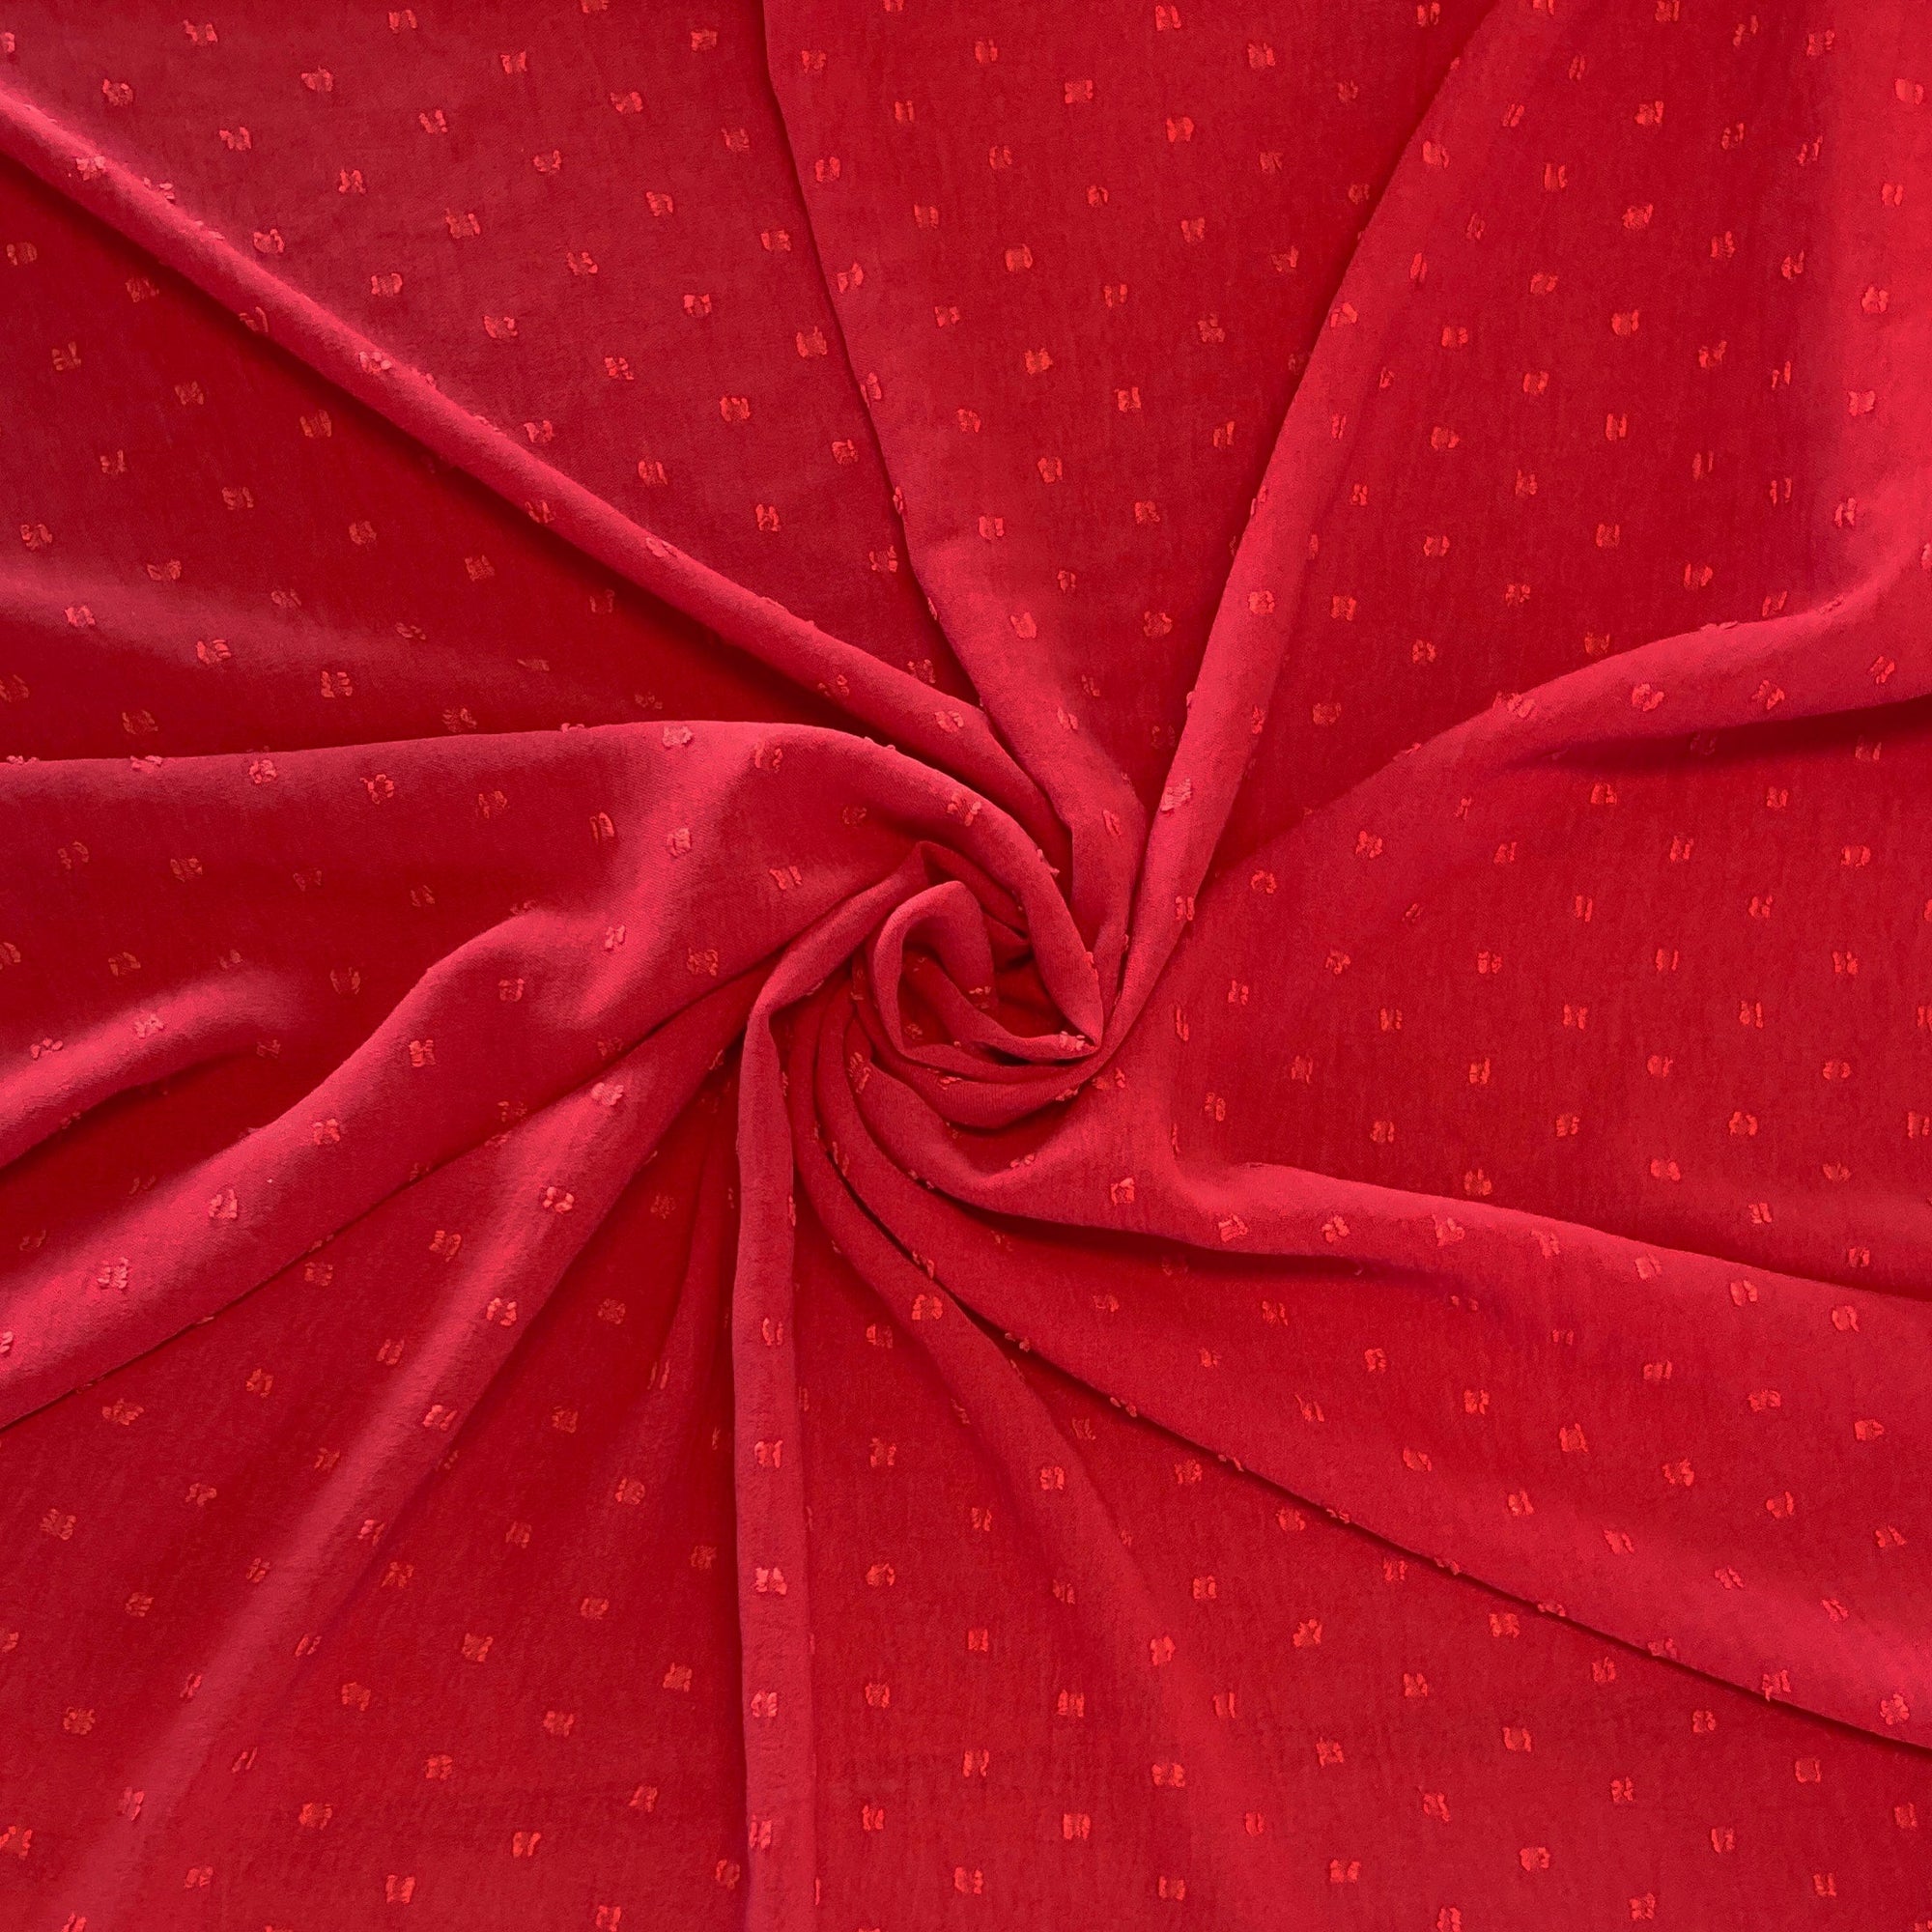 Red Swiss Dot Fabric Fabric, Raspberry Creek Fabrics, watermarked, restored